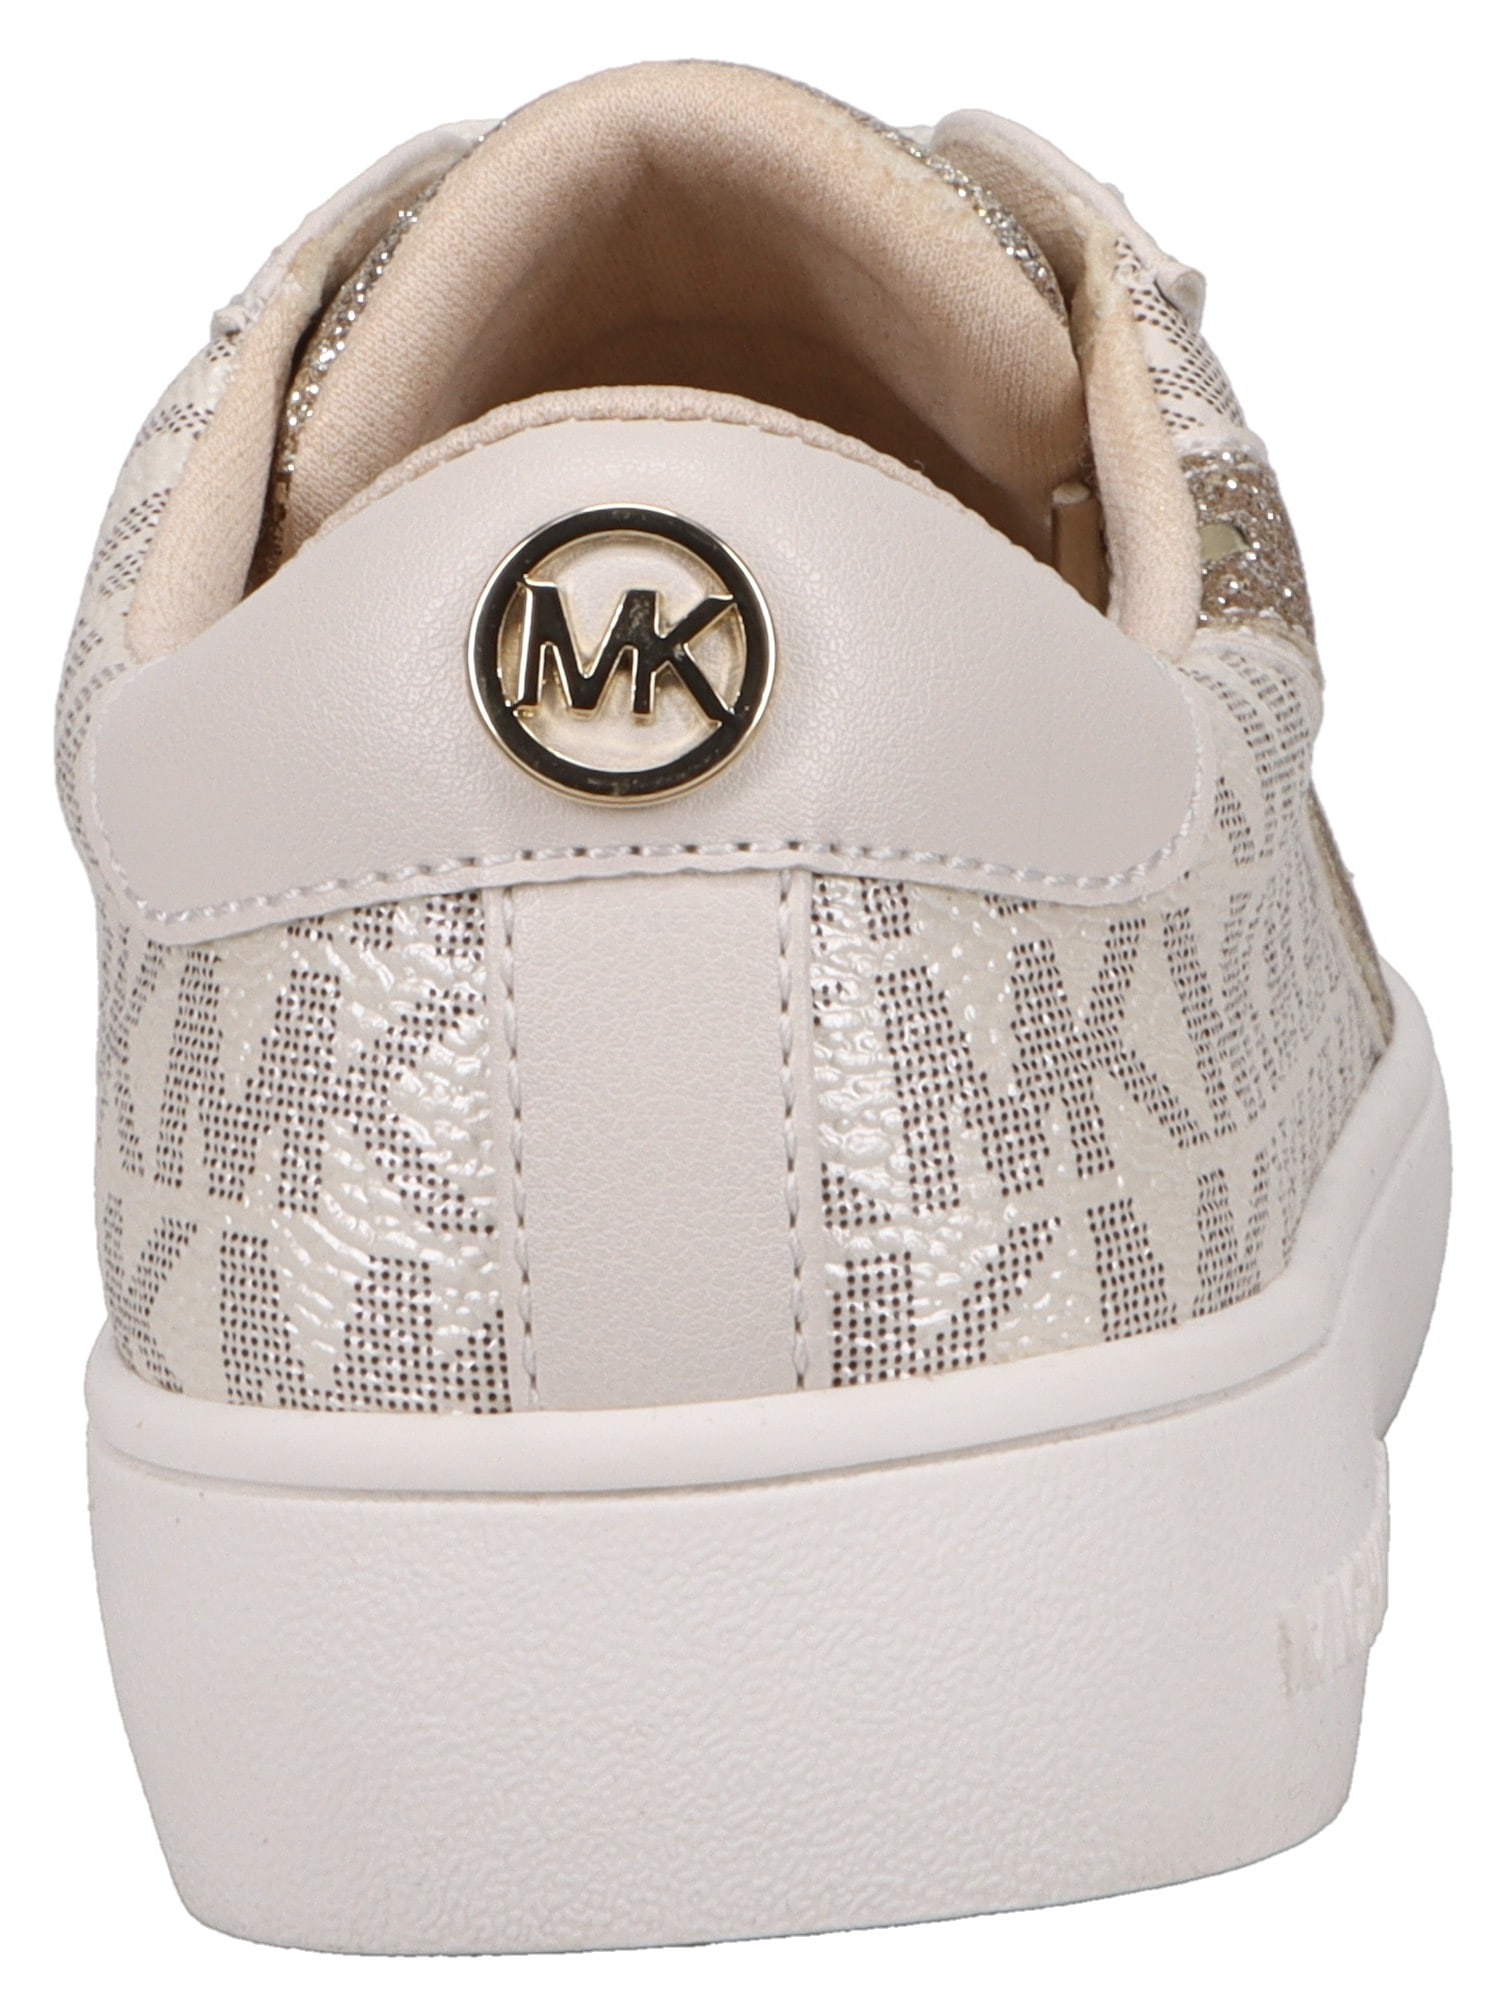 MICHAEL KORS KIDS Sneaker »JEM SLADE«, mit Michael Kors Aufdruck, Freizeitschuh, Halbschuh, Schnürschuh